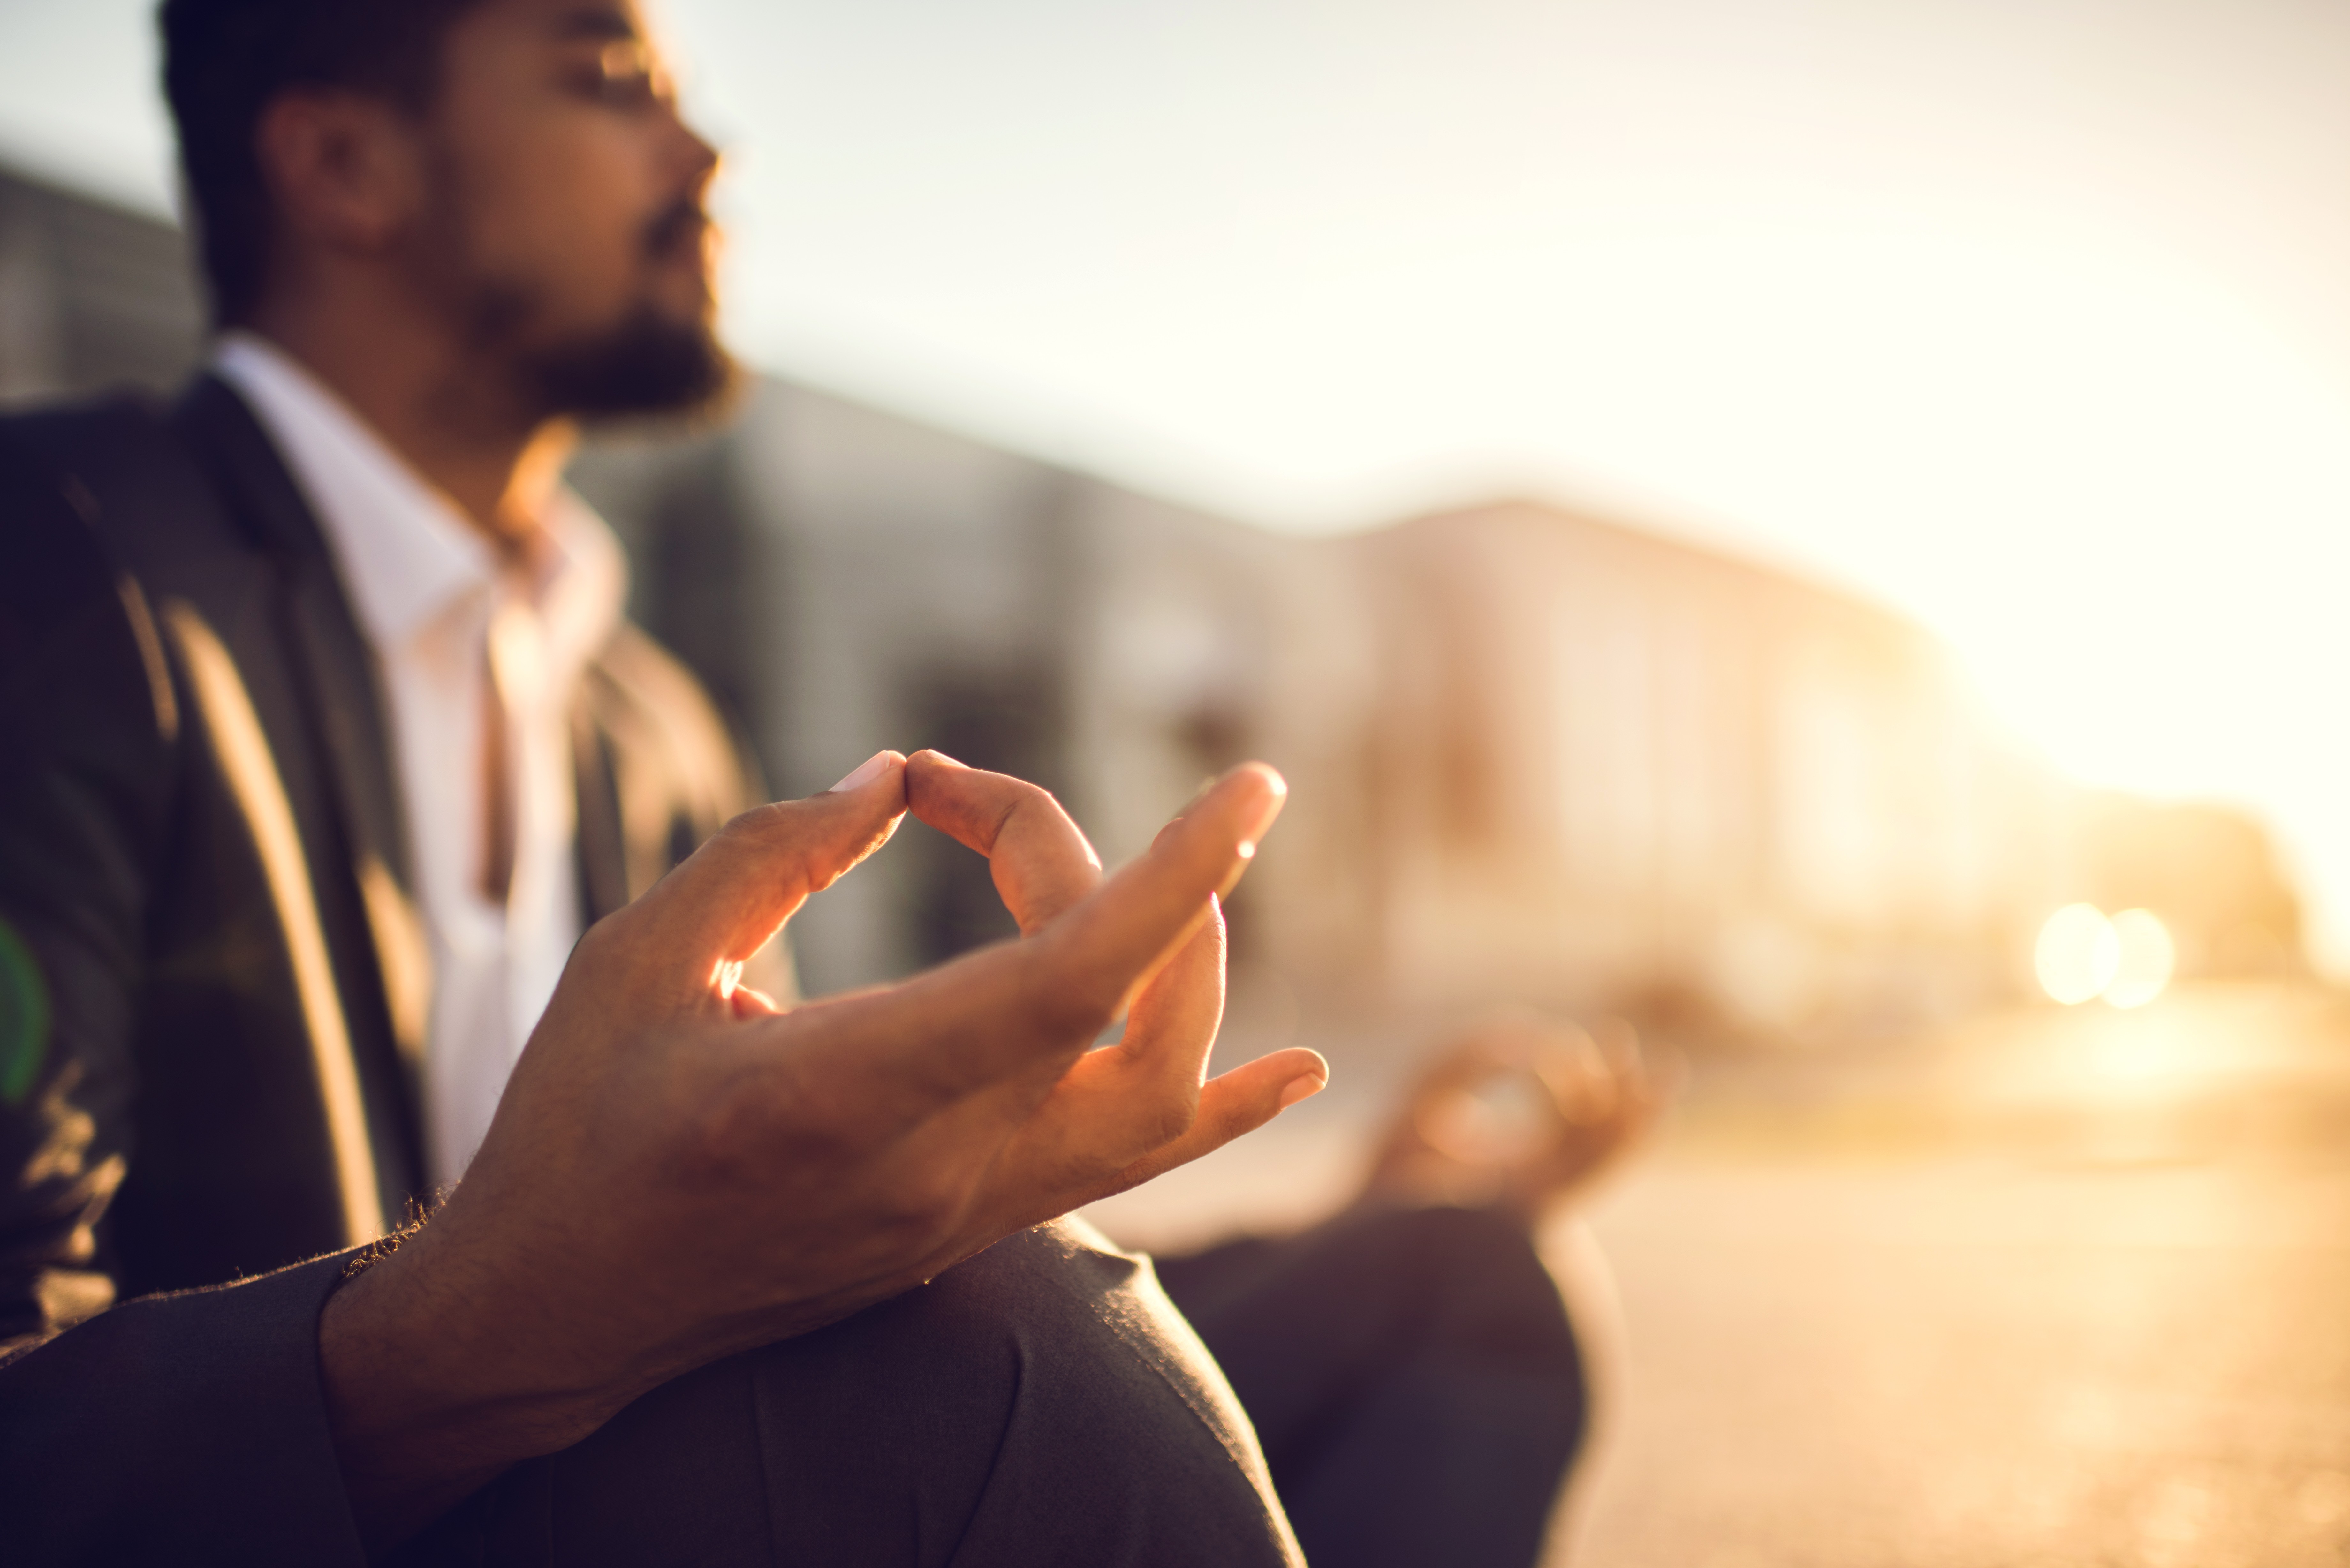 Seria a meditação um caminho para deixar o tabagismo? (Foto: Getty Images)